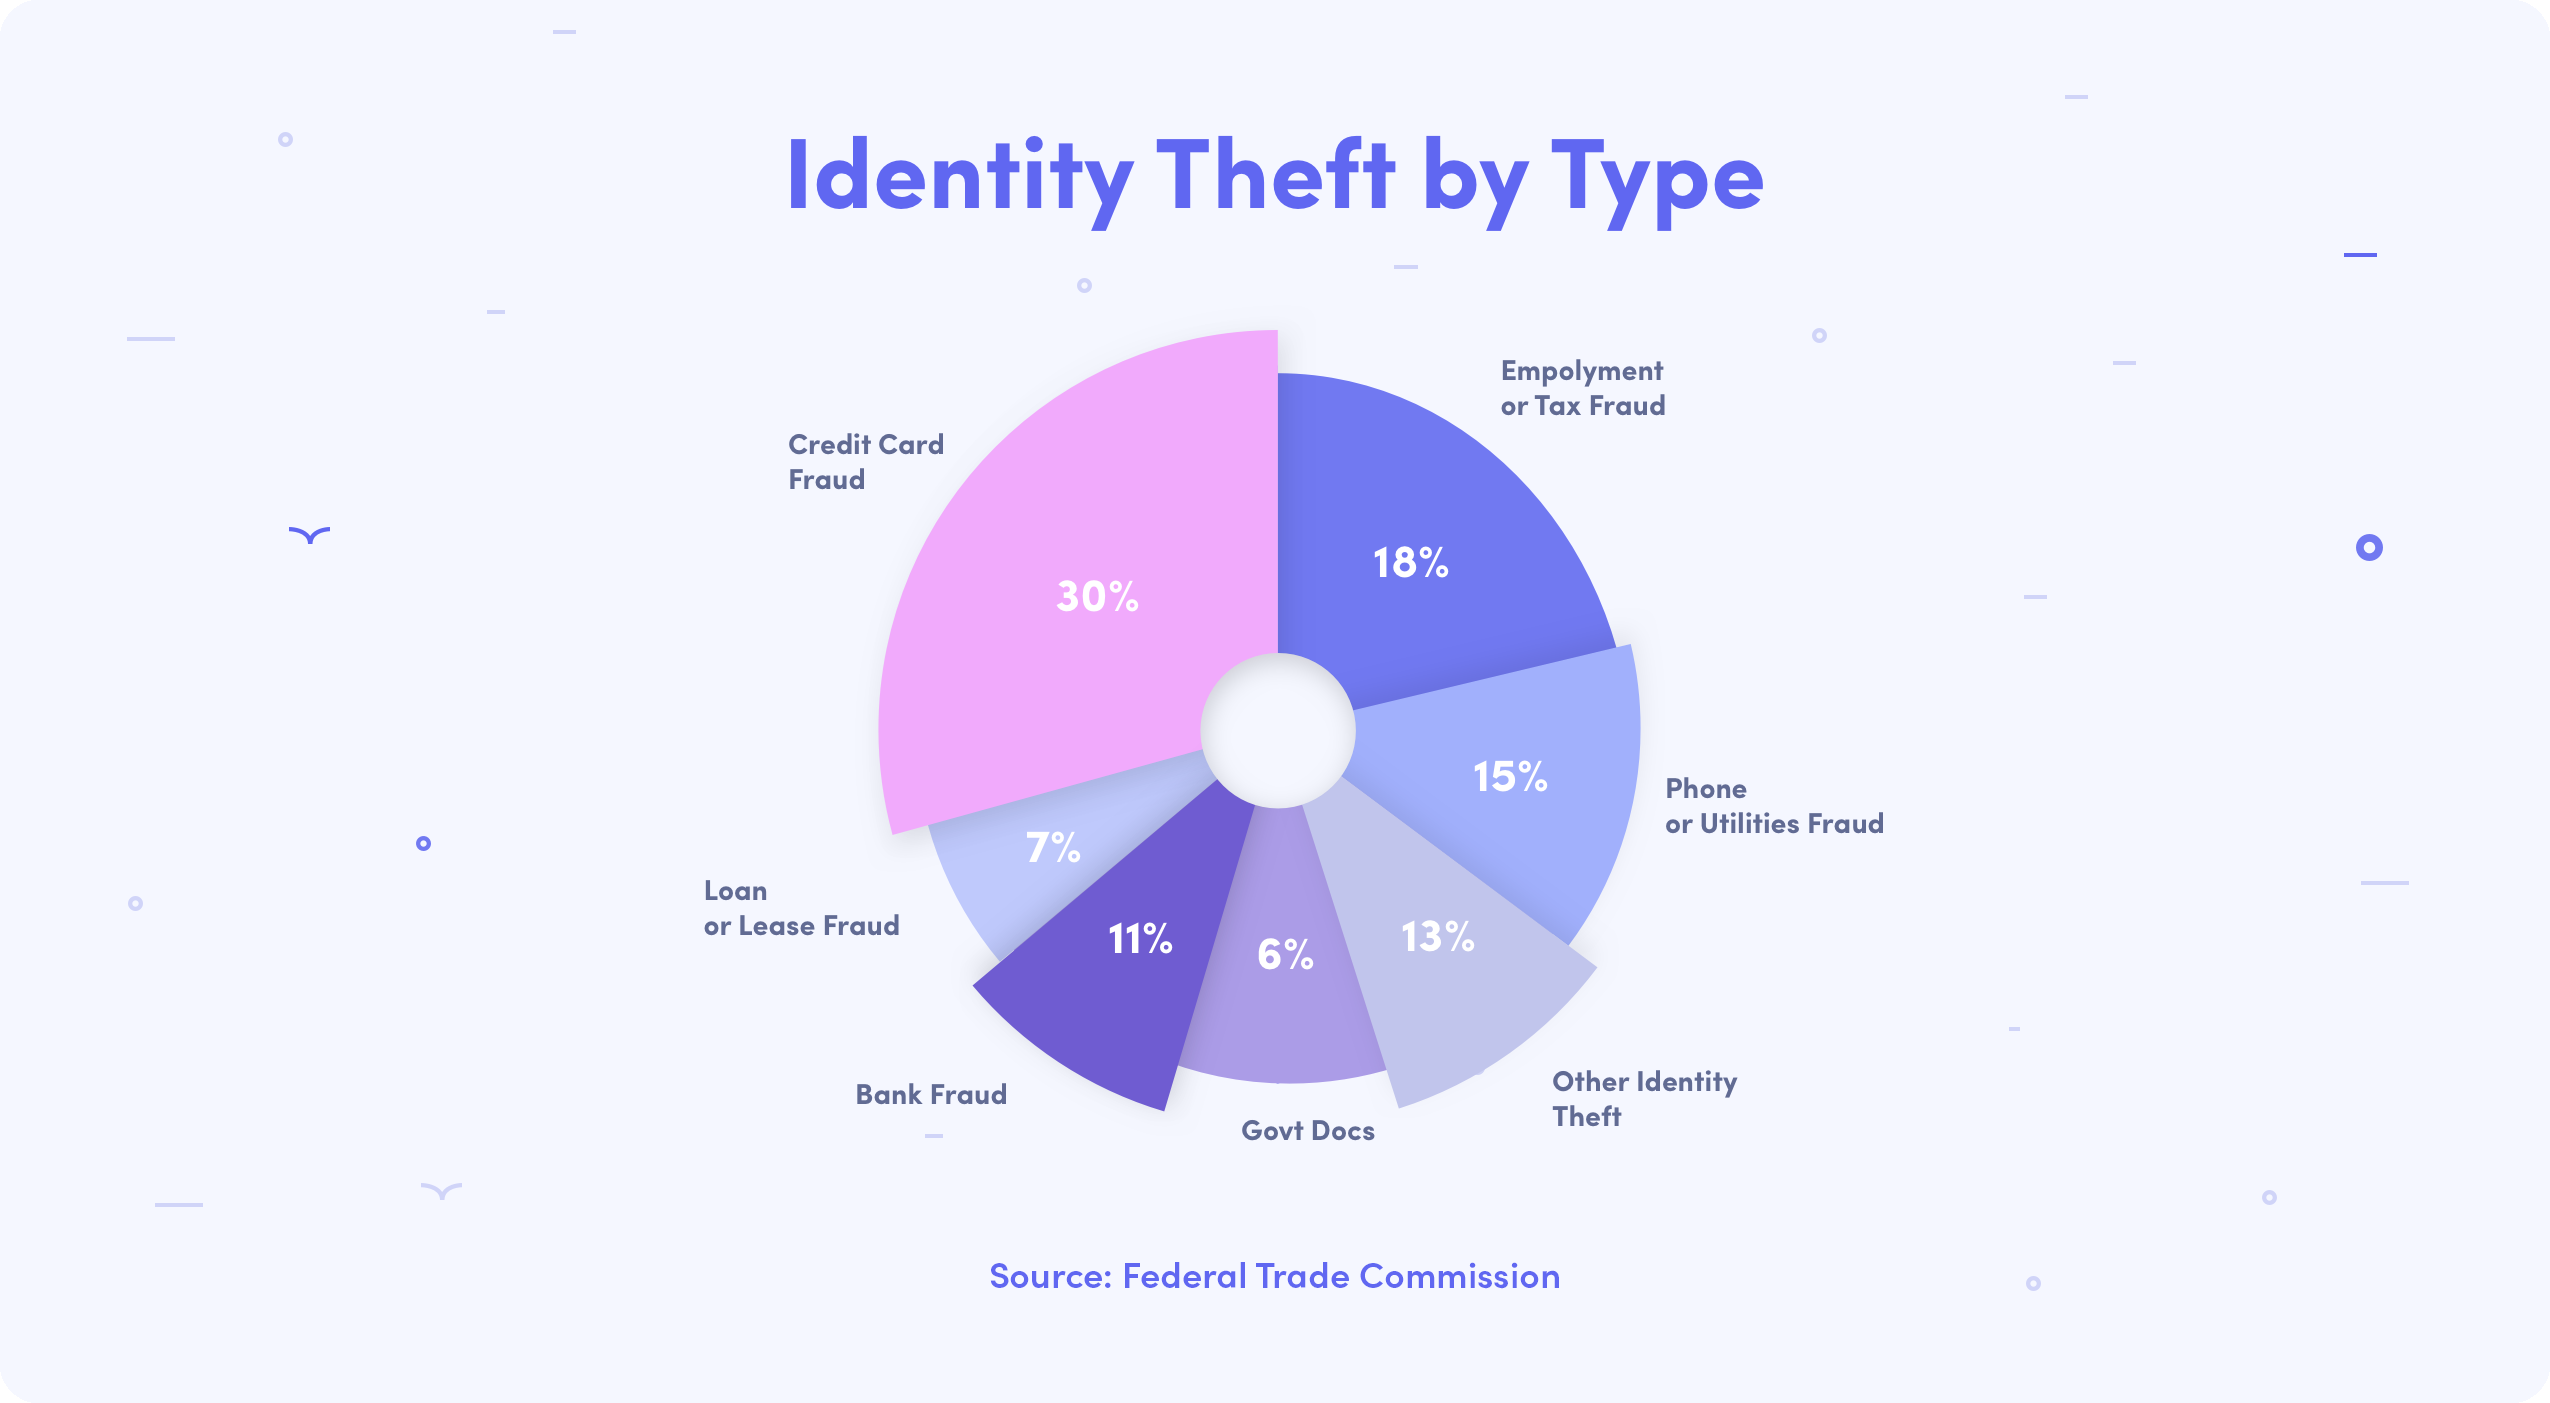 Common Types of Identity Theft